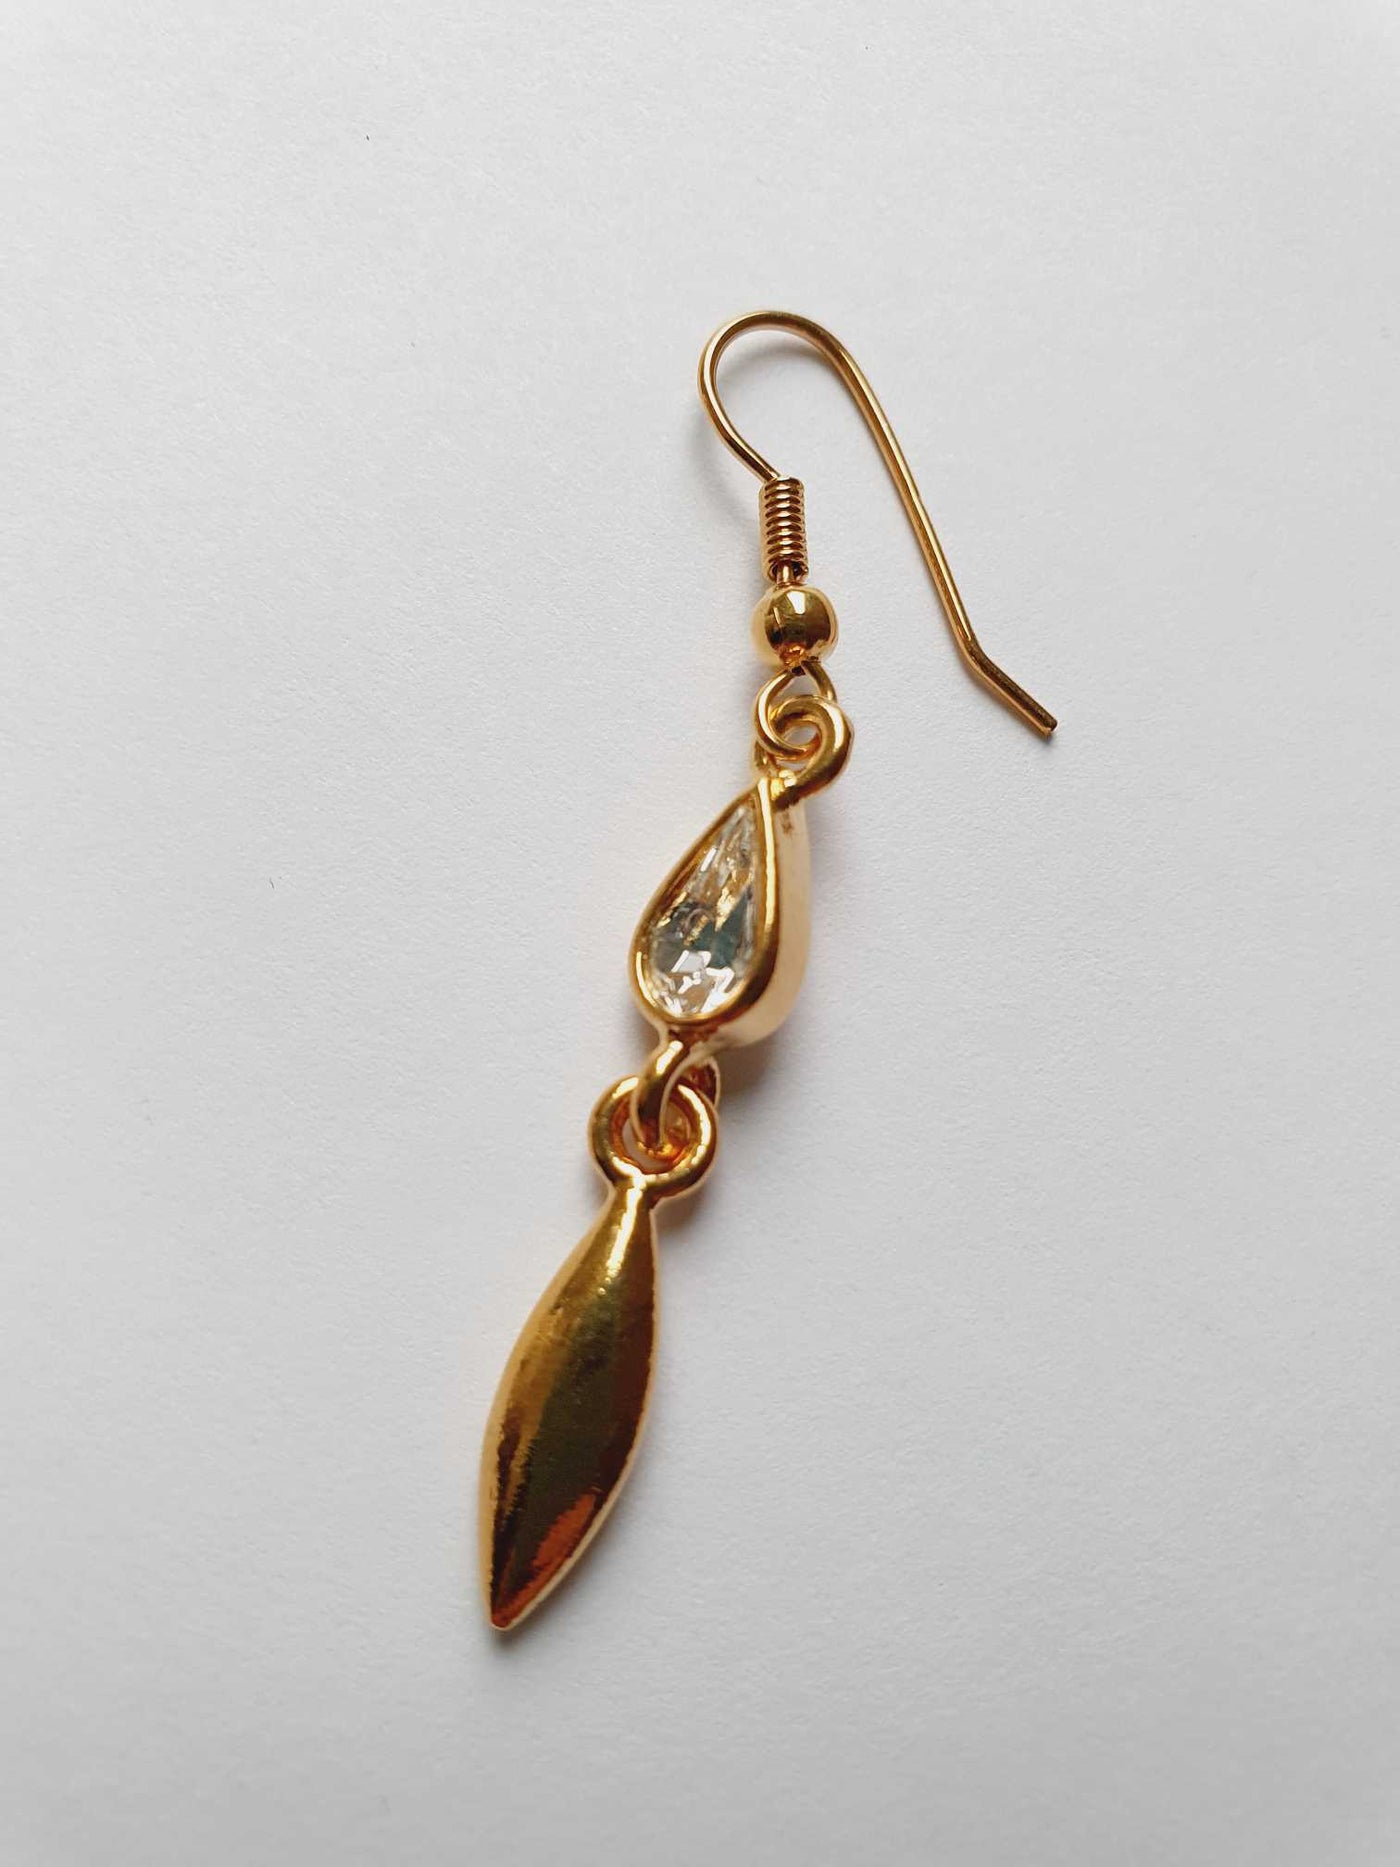 Vintage Gold Plated Drop Crystal Earrings